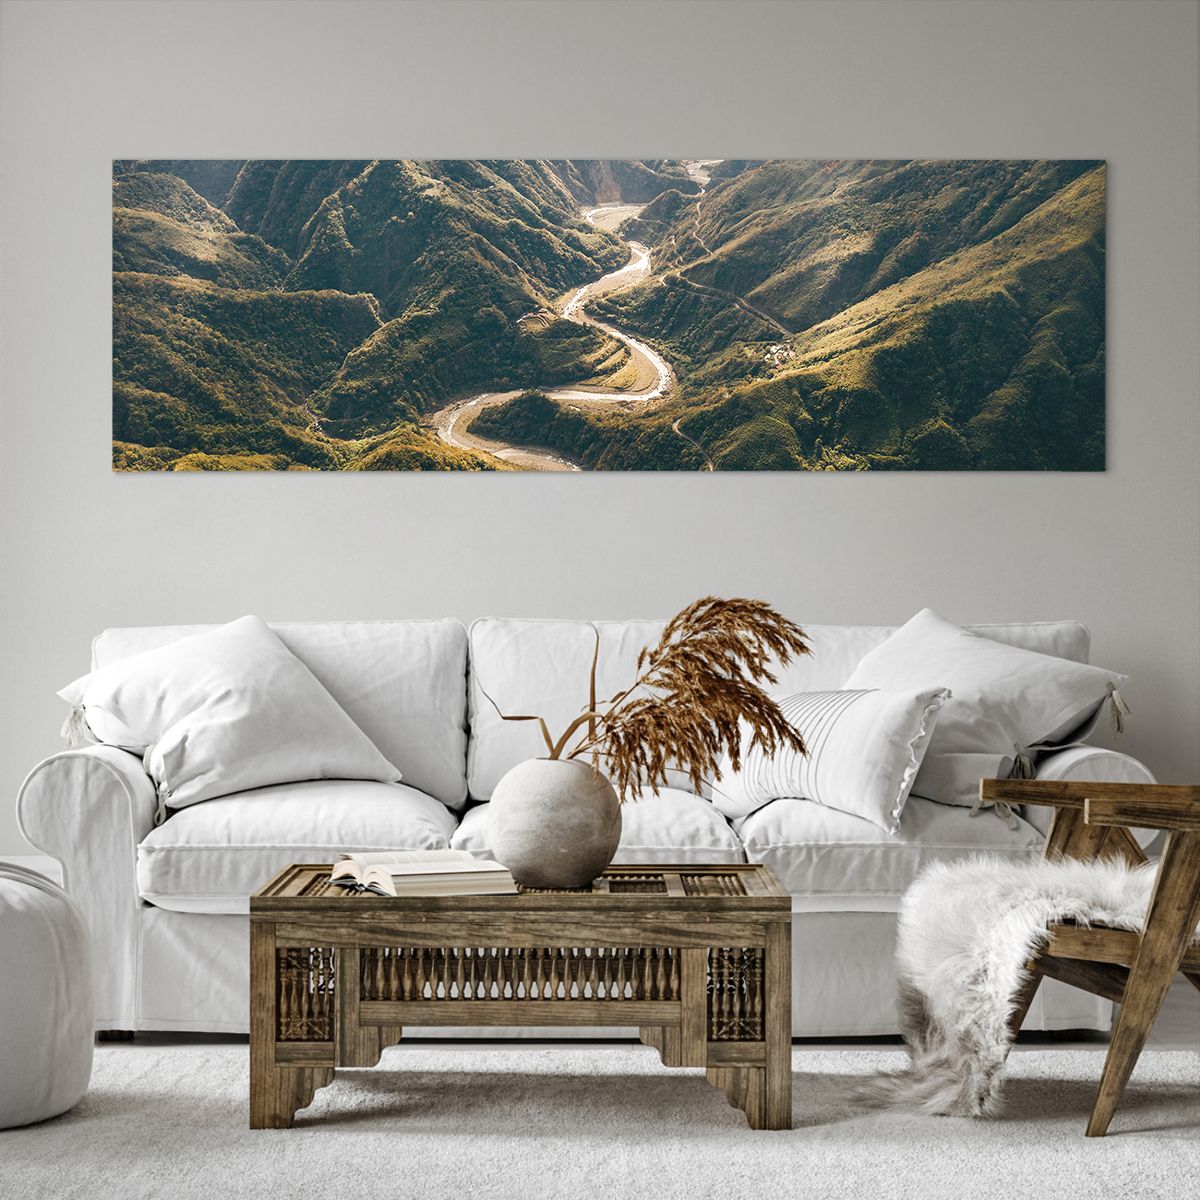 Bild auf Leinwand Berglandschaft, Bild auf Leinwand Bergstraße, Bild auf Leinwand Wald, Bild auf Leinwand Natur, Bild auf Leinwand Vogelperspektive